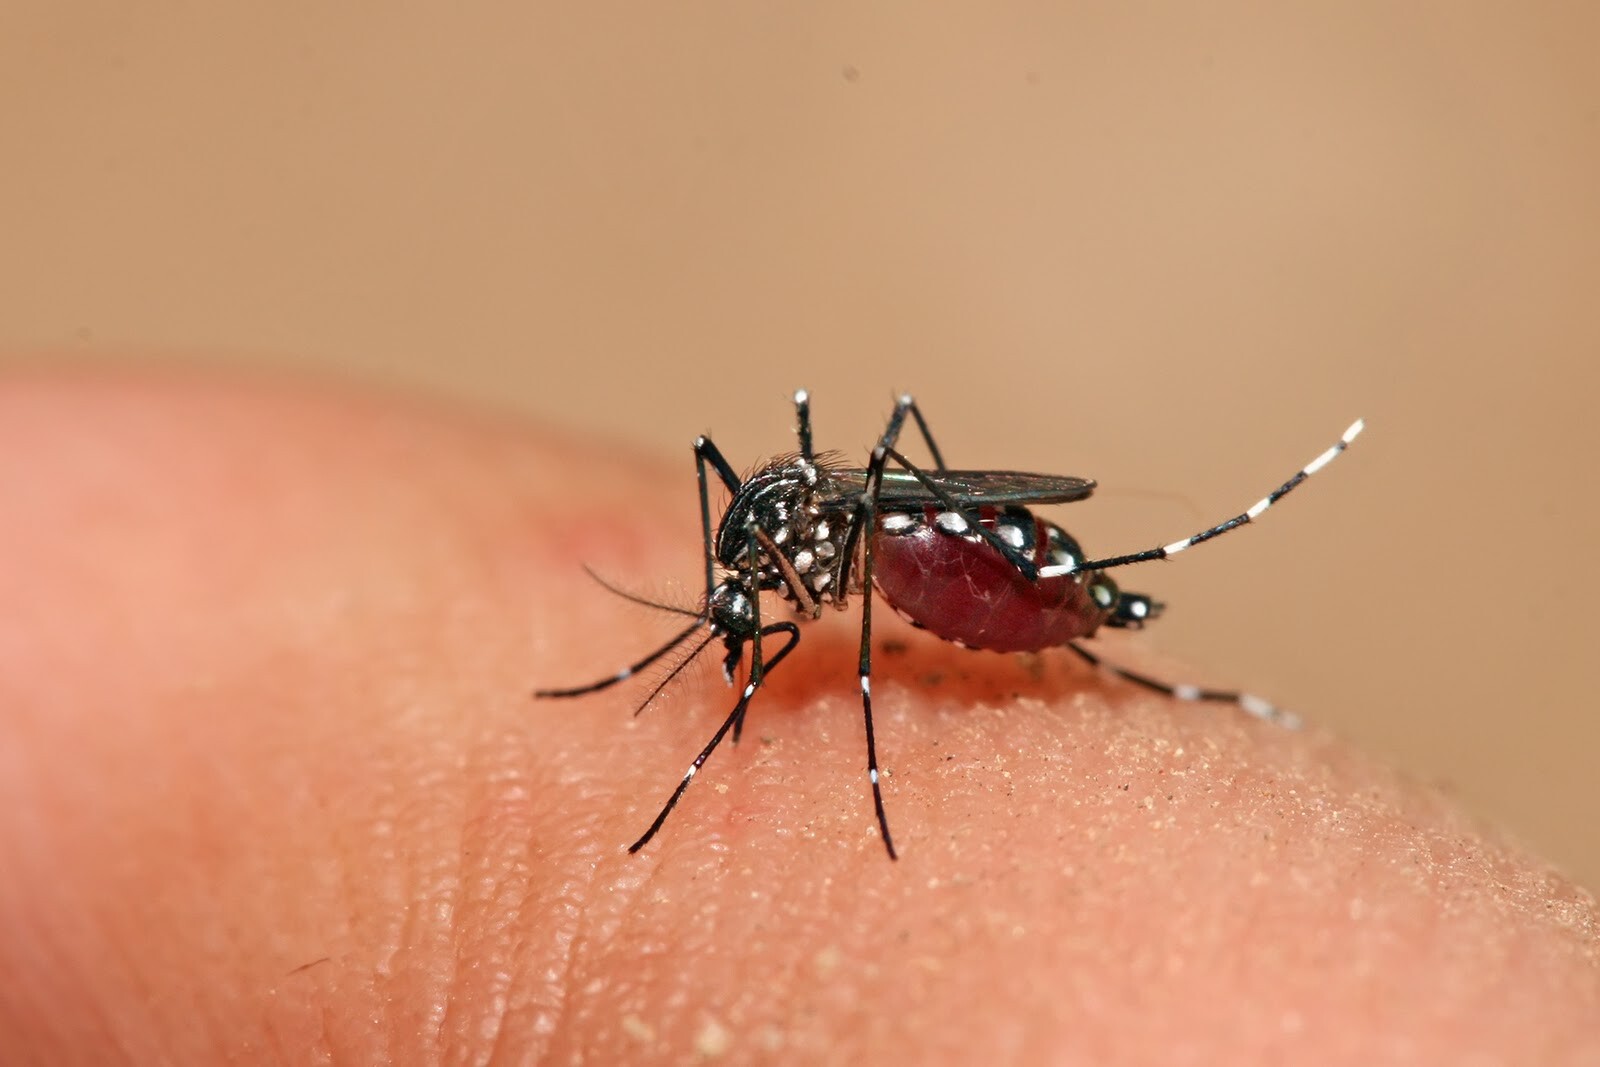 Pessoas que nunca tiveram dengue não devem tomar vacina da doença, diz Anvisa